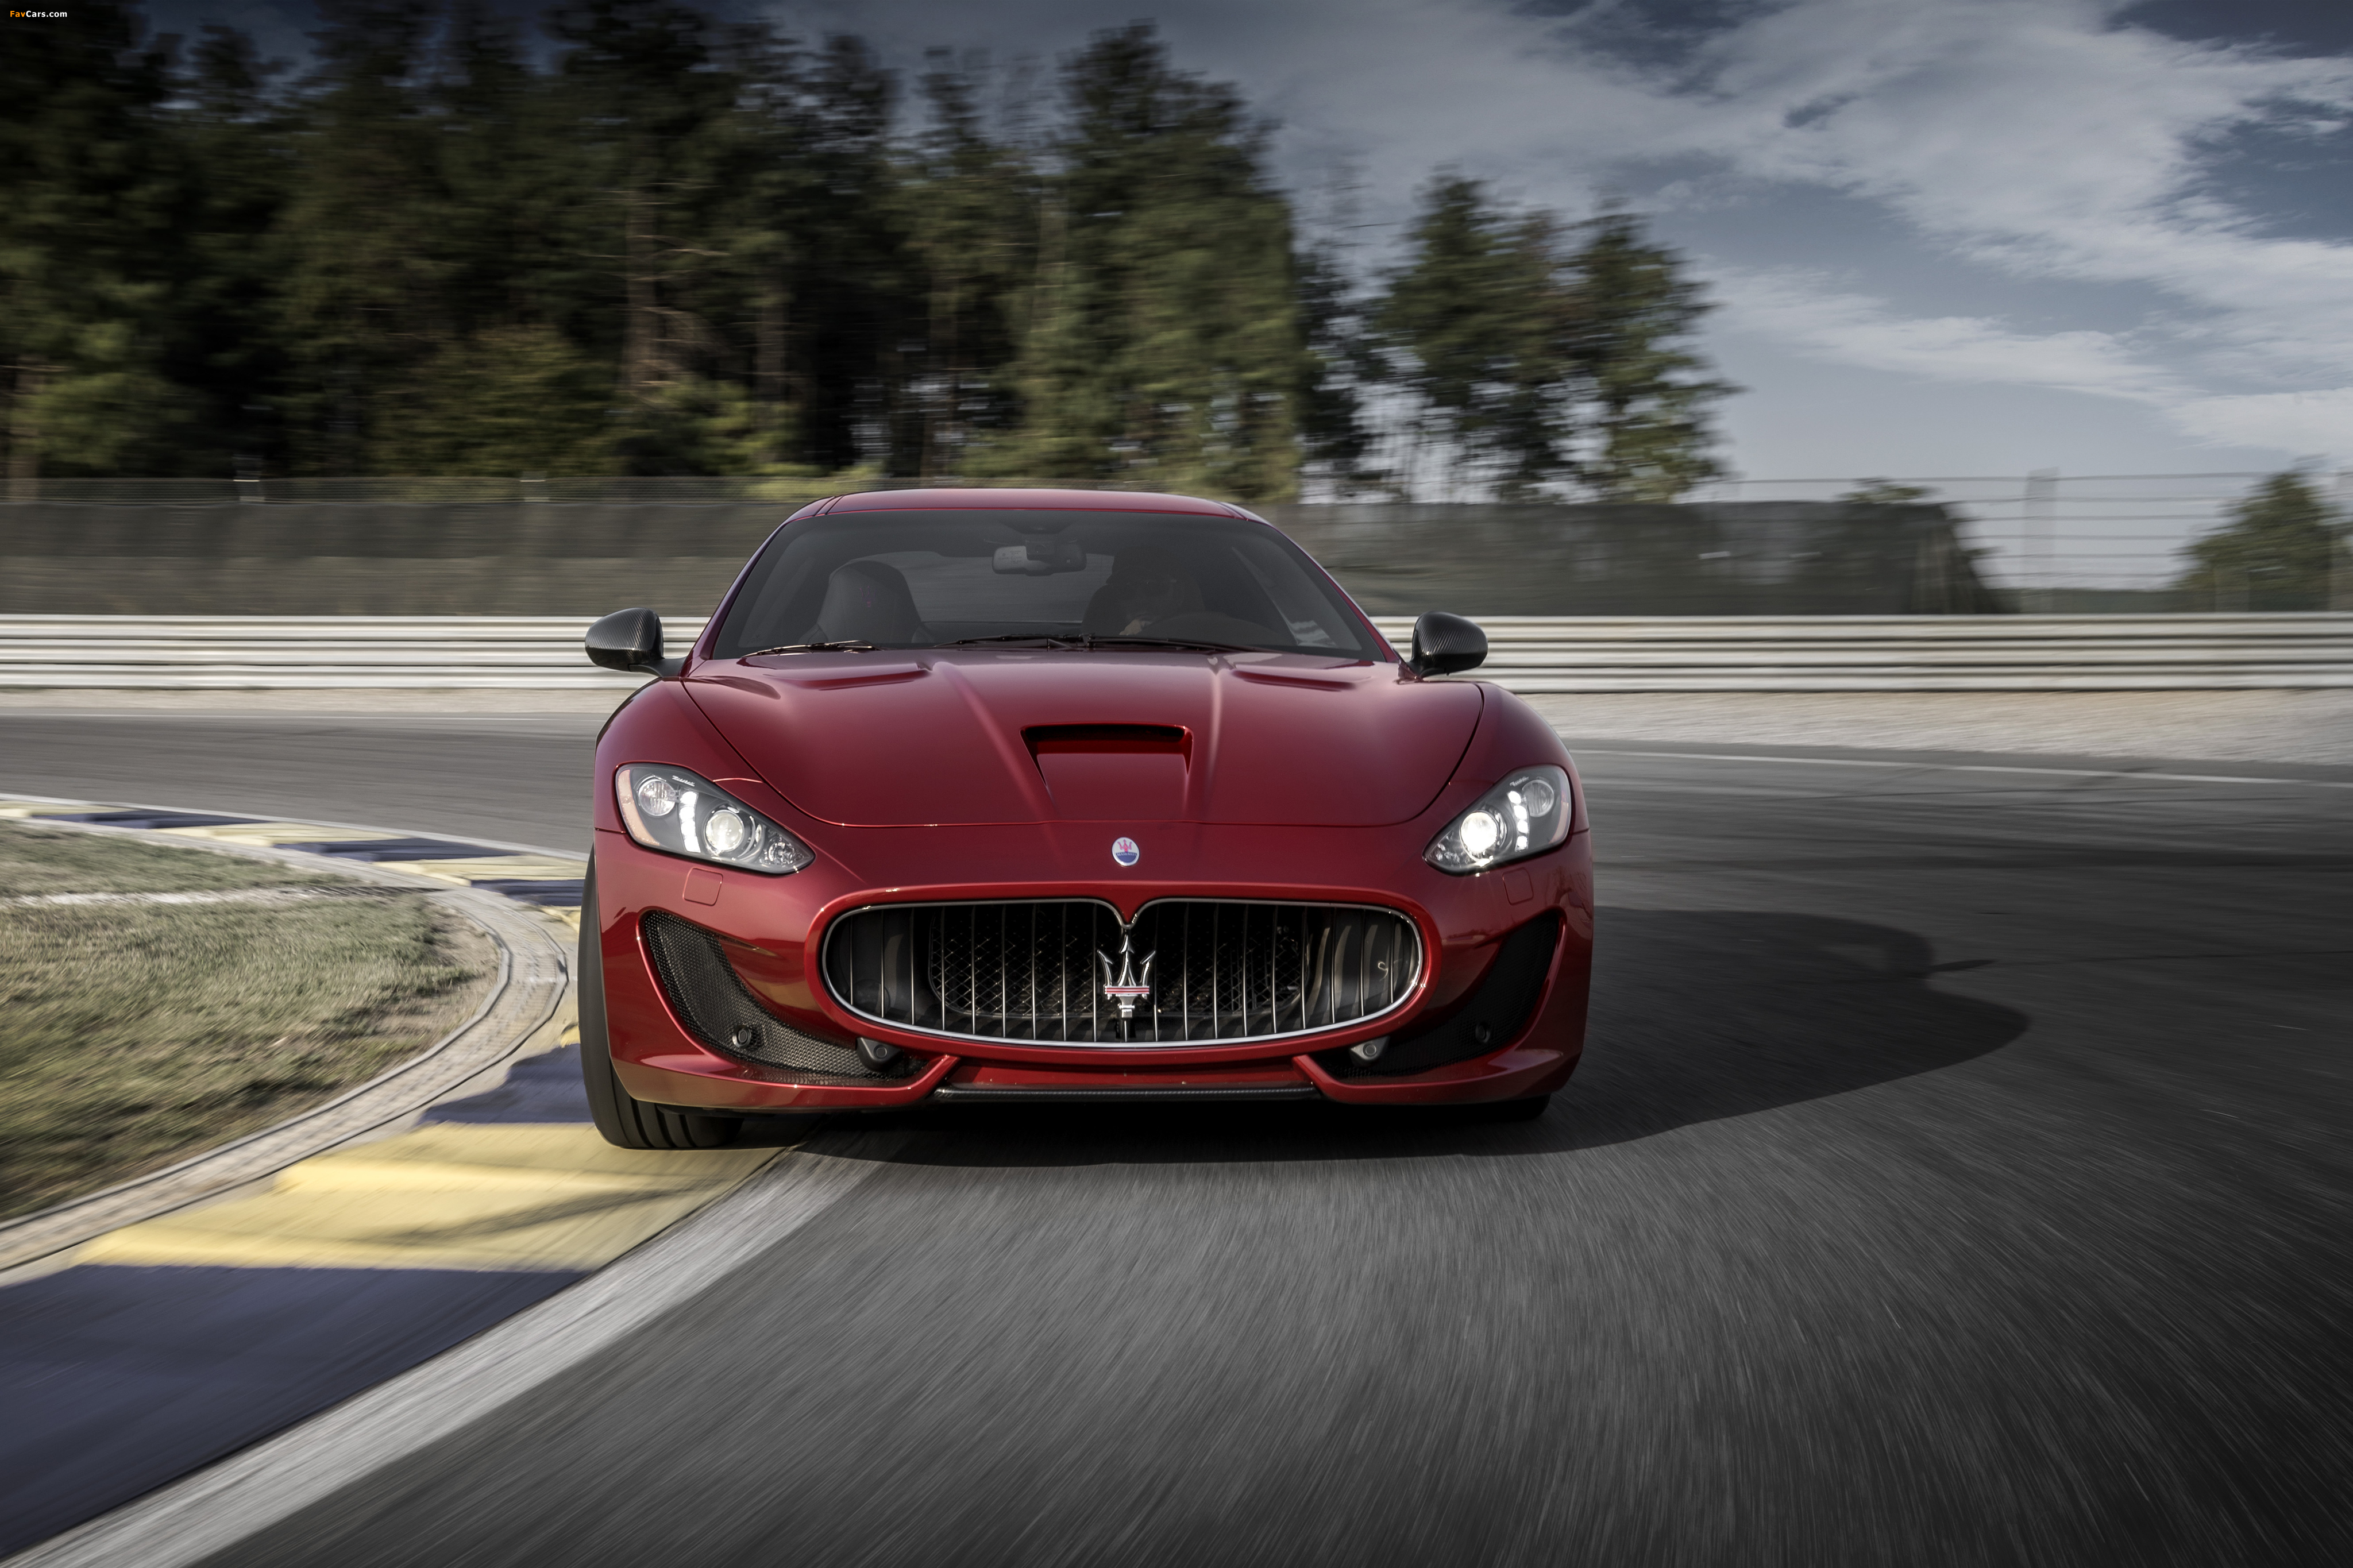 Images of Maserati GranTurismo Sport 